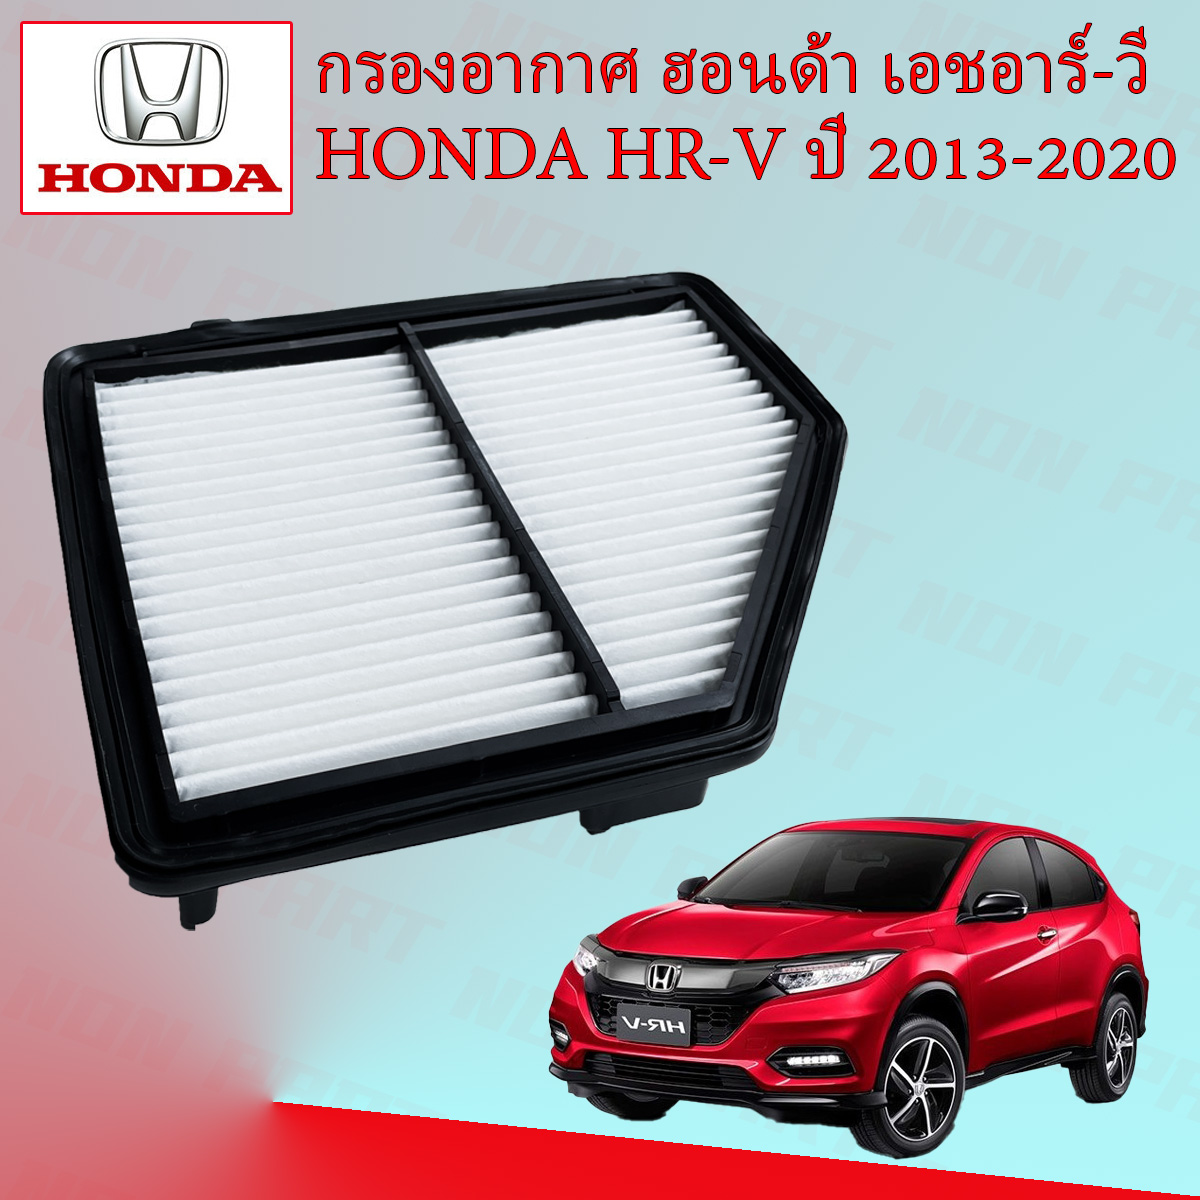 Passend für Honda HR-V 2013-2020, Auto-Windschutzscheiben